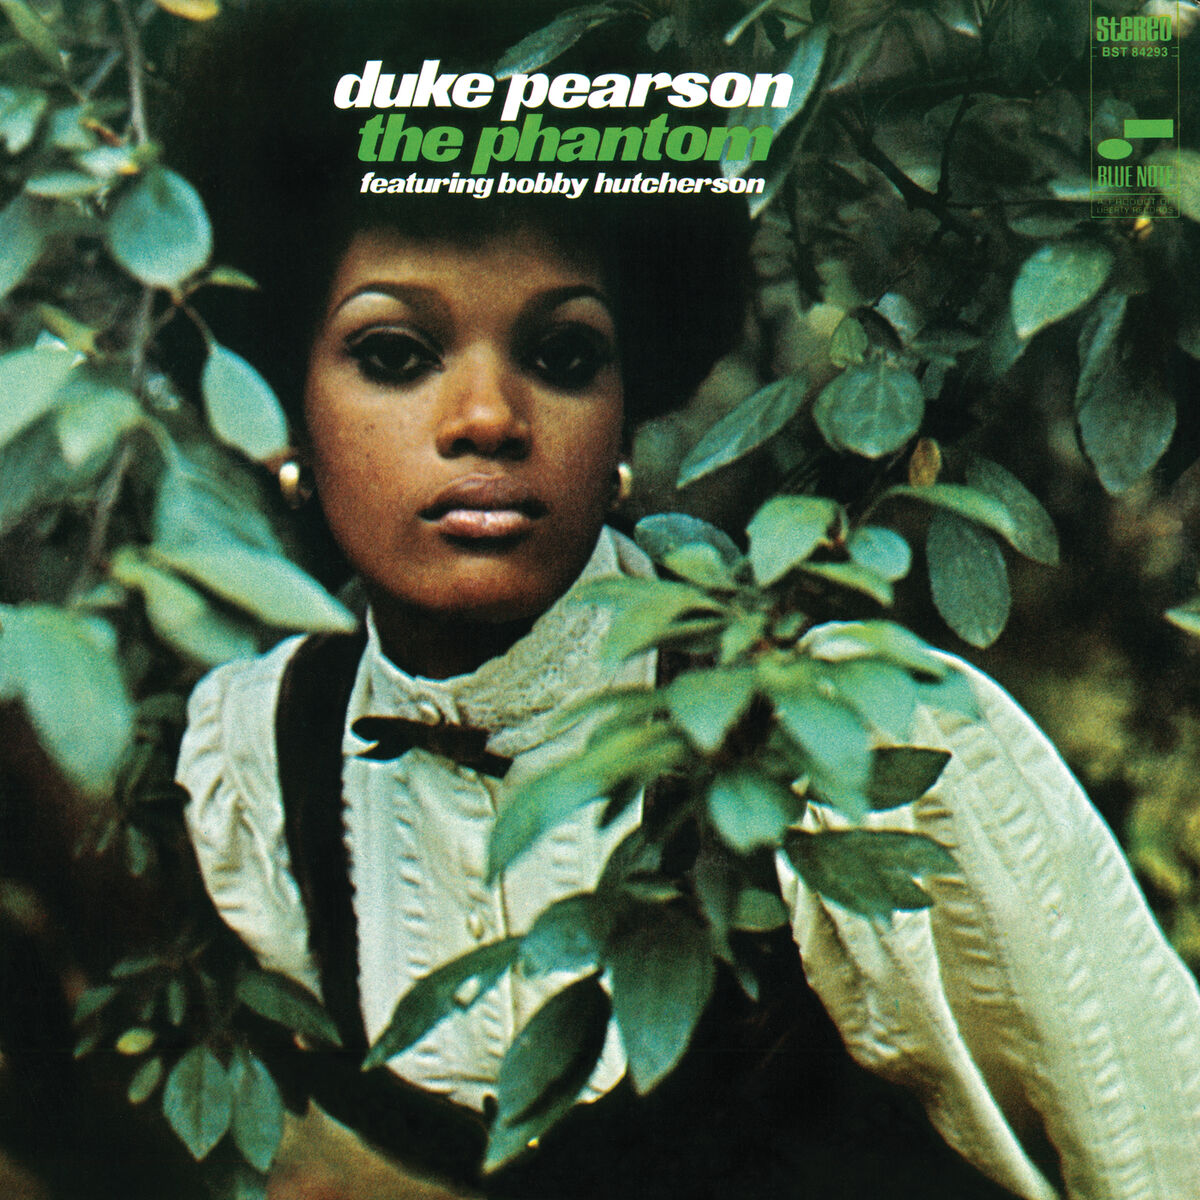 Duke Pearson: albums, songs, playlists | Listen on Deezer